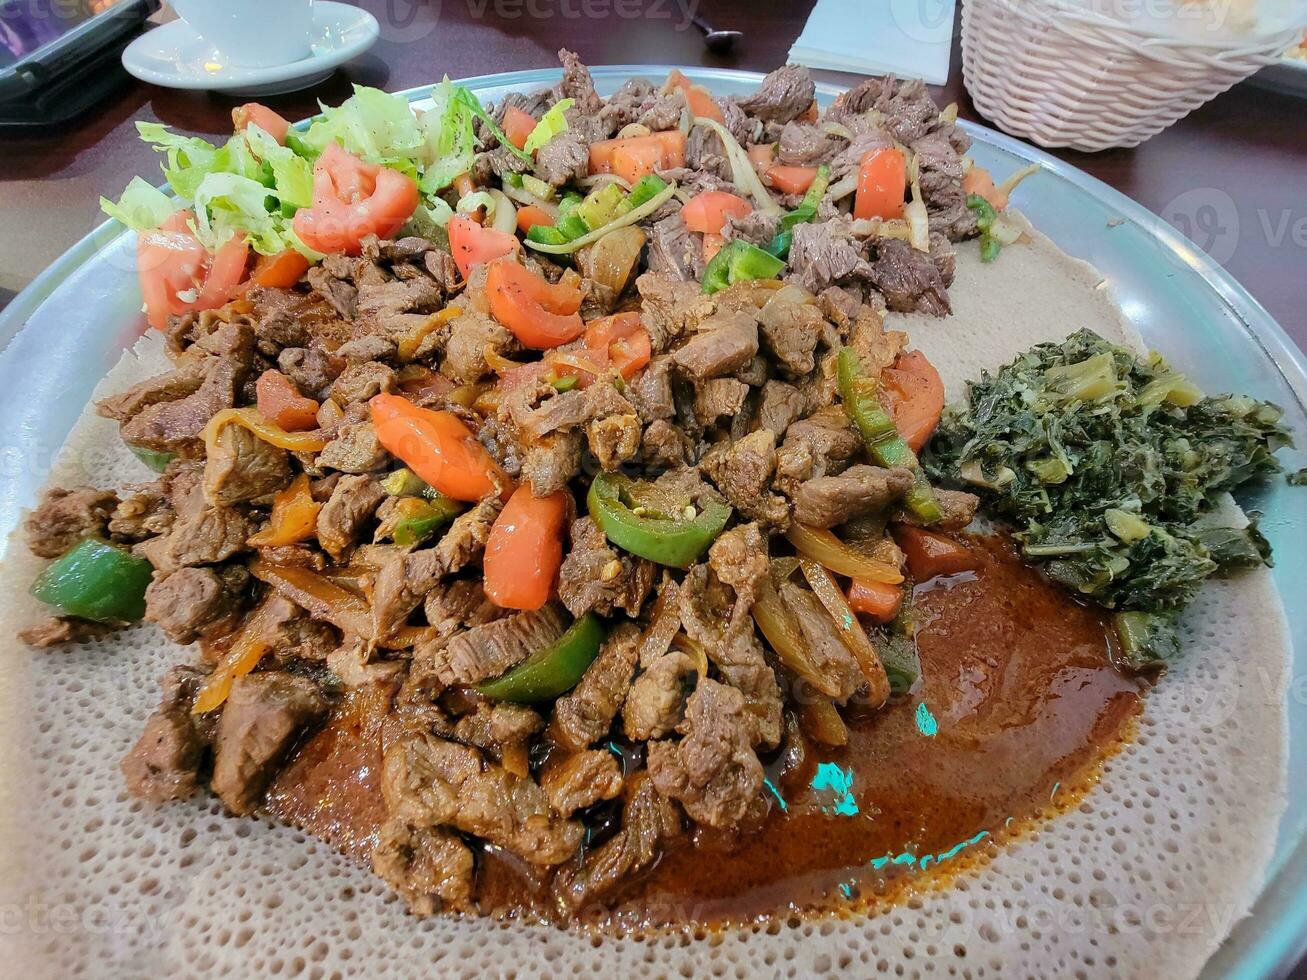 äthiopisches essen injera brot mit steak und tomaten foto